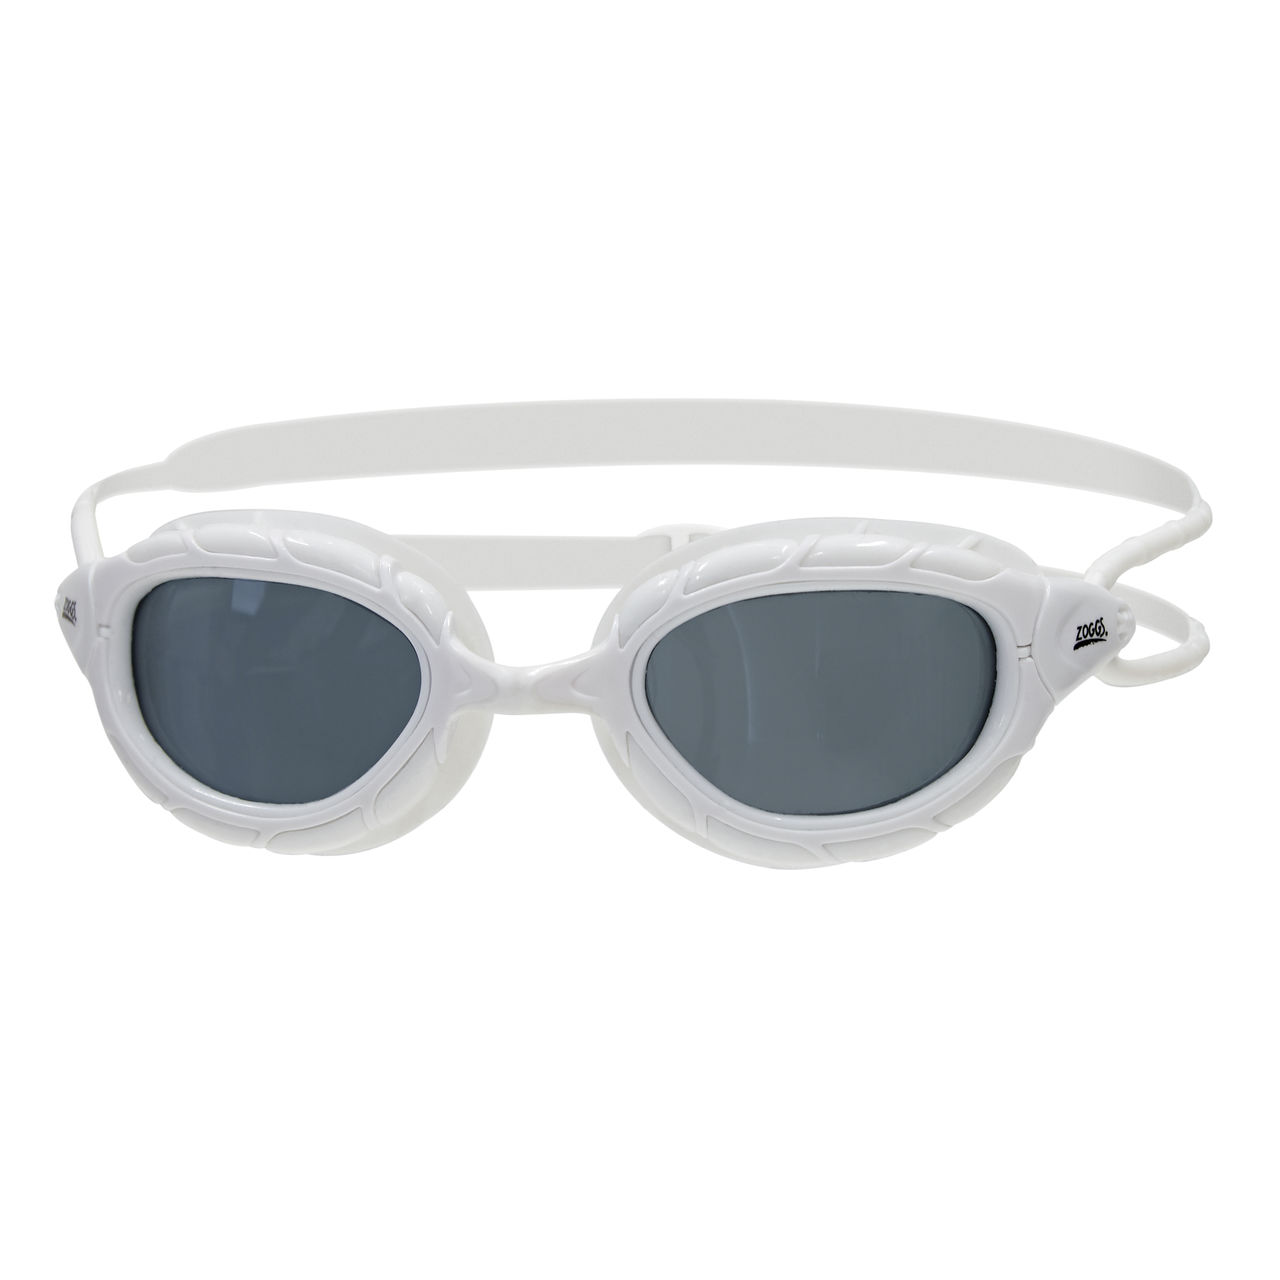 Produktbild von Zoggs Predator Schwimmbrille - Getönte Gläser: Smoke - Small Fit - Weiß/Weiß